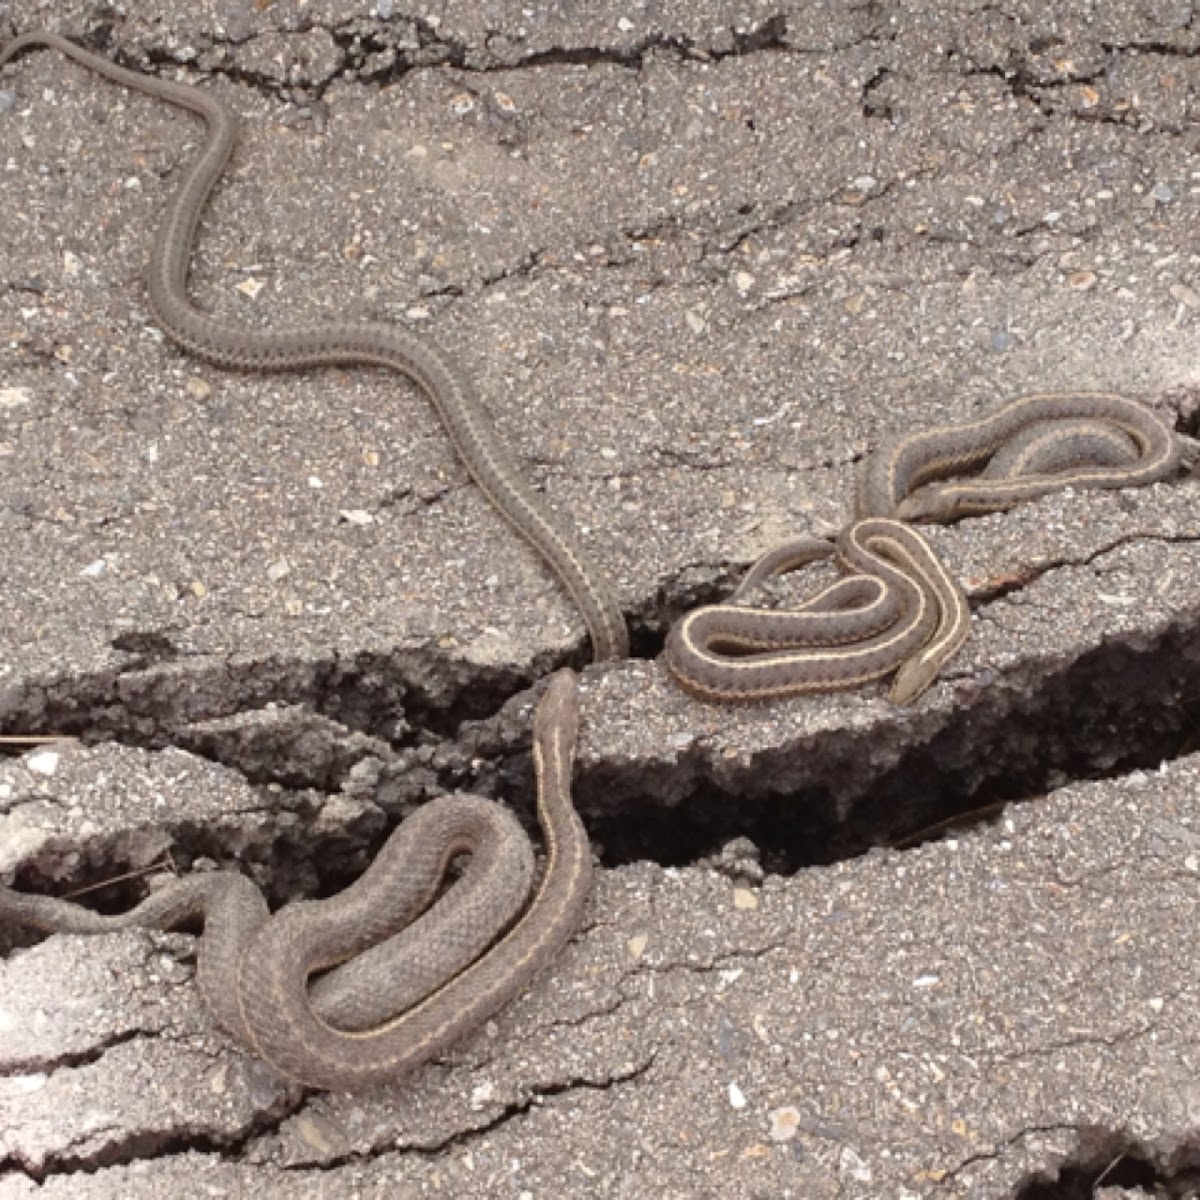 Western terrestrial garter snake (aka Wandering garter snake)